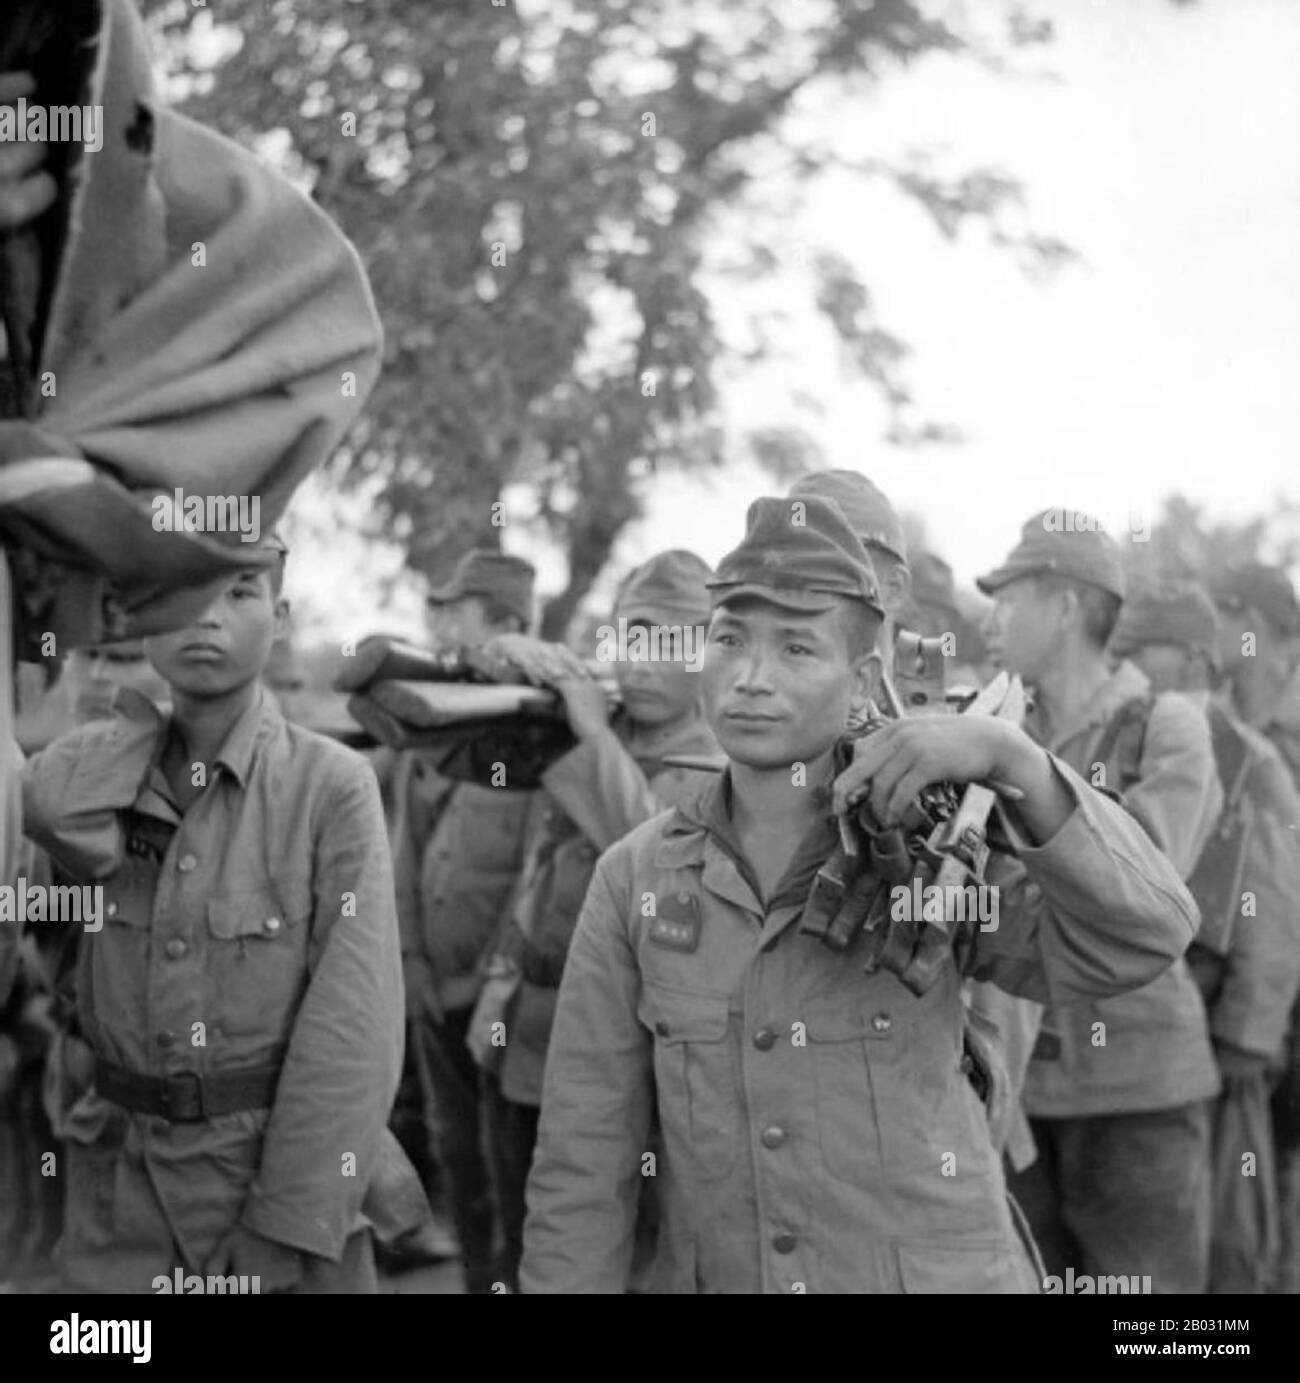 Un champ de bataille majeur, la Birmanie a été dévastée pendant la seconde Guerre mondiale En mars 1942, dans les mois qui suivent leur entrée dans la guerre, les troupes japonaises avaient avancé sur Rangoon et l'administration britannique s'était effondrée. Une administration exécutive birmane dirigée par Ba Maw a été créée par les Japonais en août 1942. Les Chindits britanniques de Wingate ont été formés en groupes de pénétration à long terme formés pour opérer profondément derrière les lignes japonaises. Une unité américaine similaire, Merrill's Marauders, suivit les Chindits dans la jungle birmane en 1943. À partir de la fin de 1944, les troupes alliées lancèrent une série d'offensives Banque D'Images